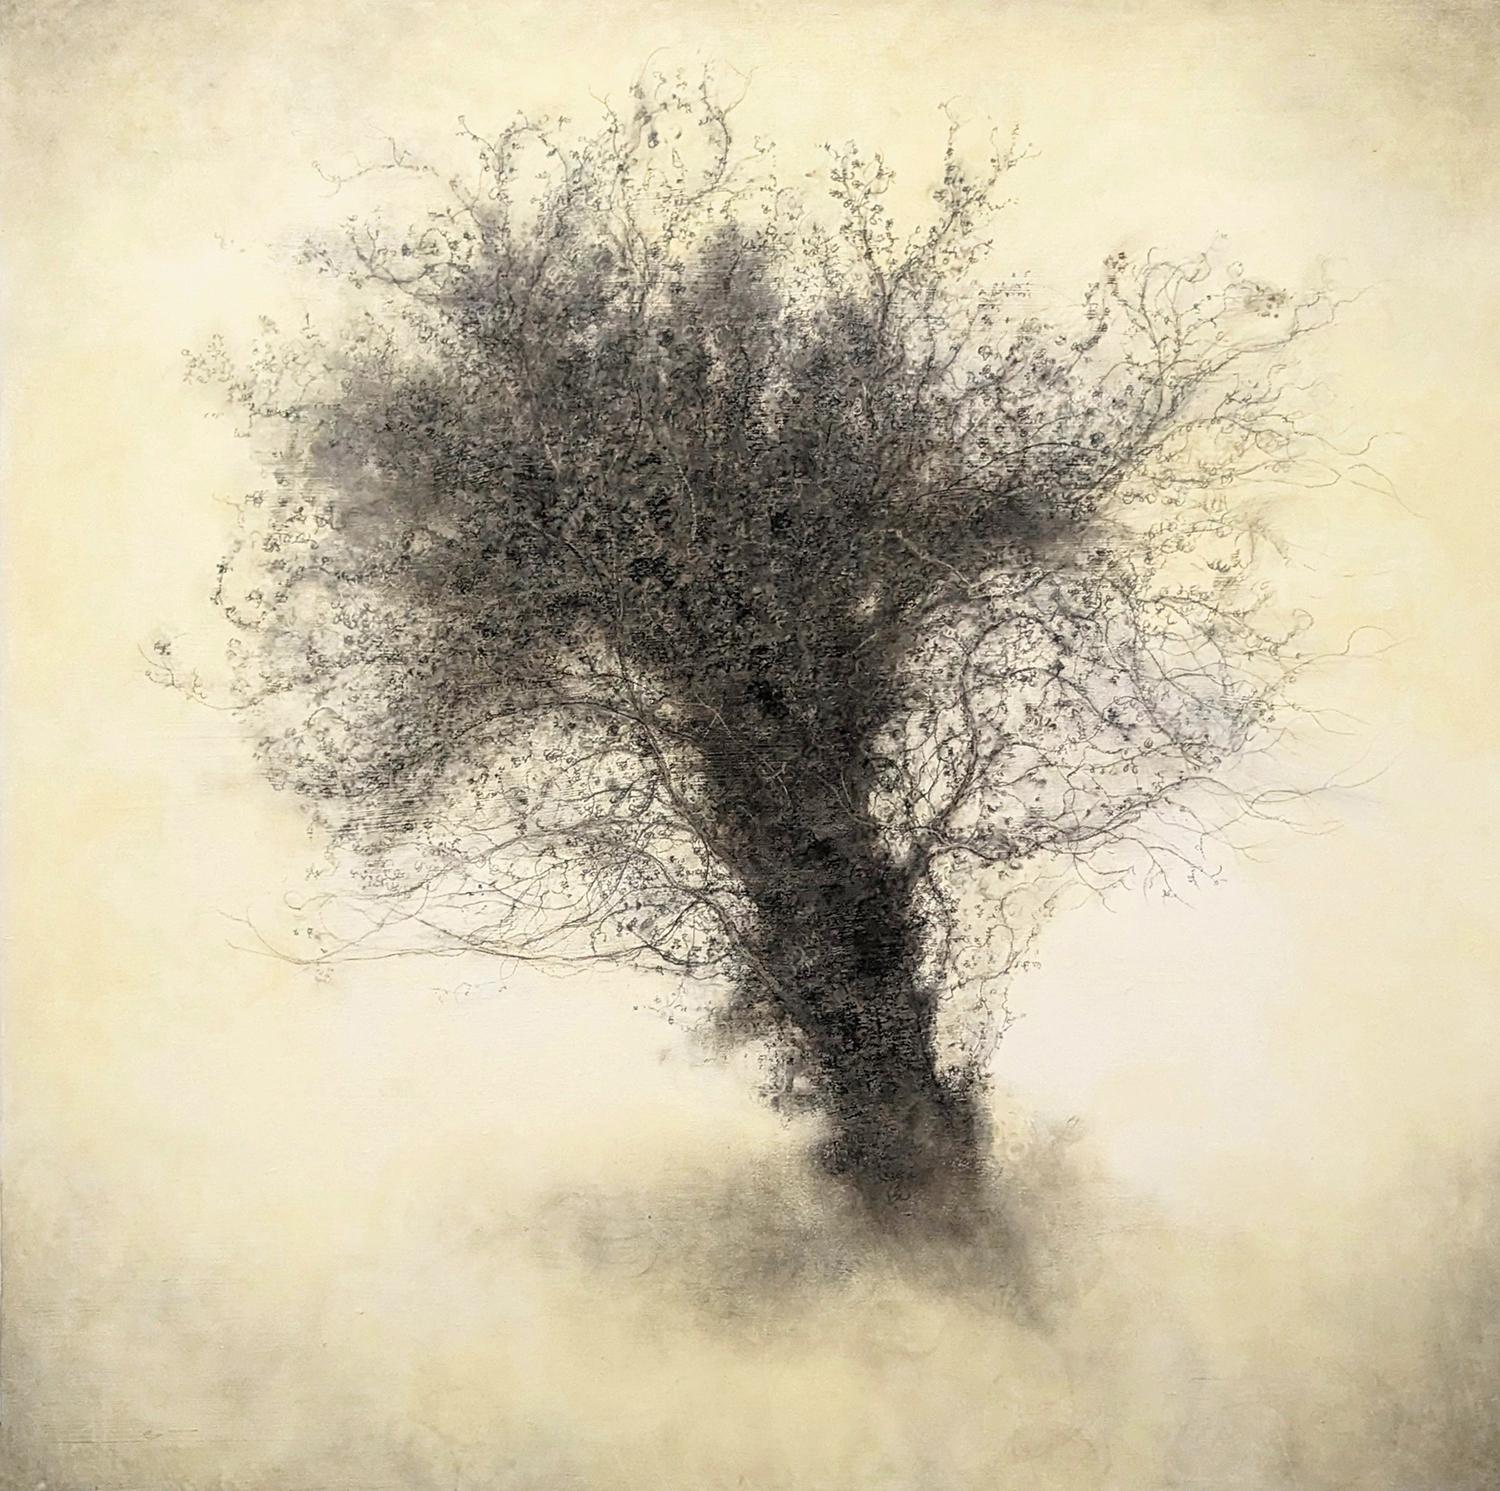 Froth (Detailed Charcoal Tree Landscape auf Tafel von Sue Bryan)